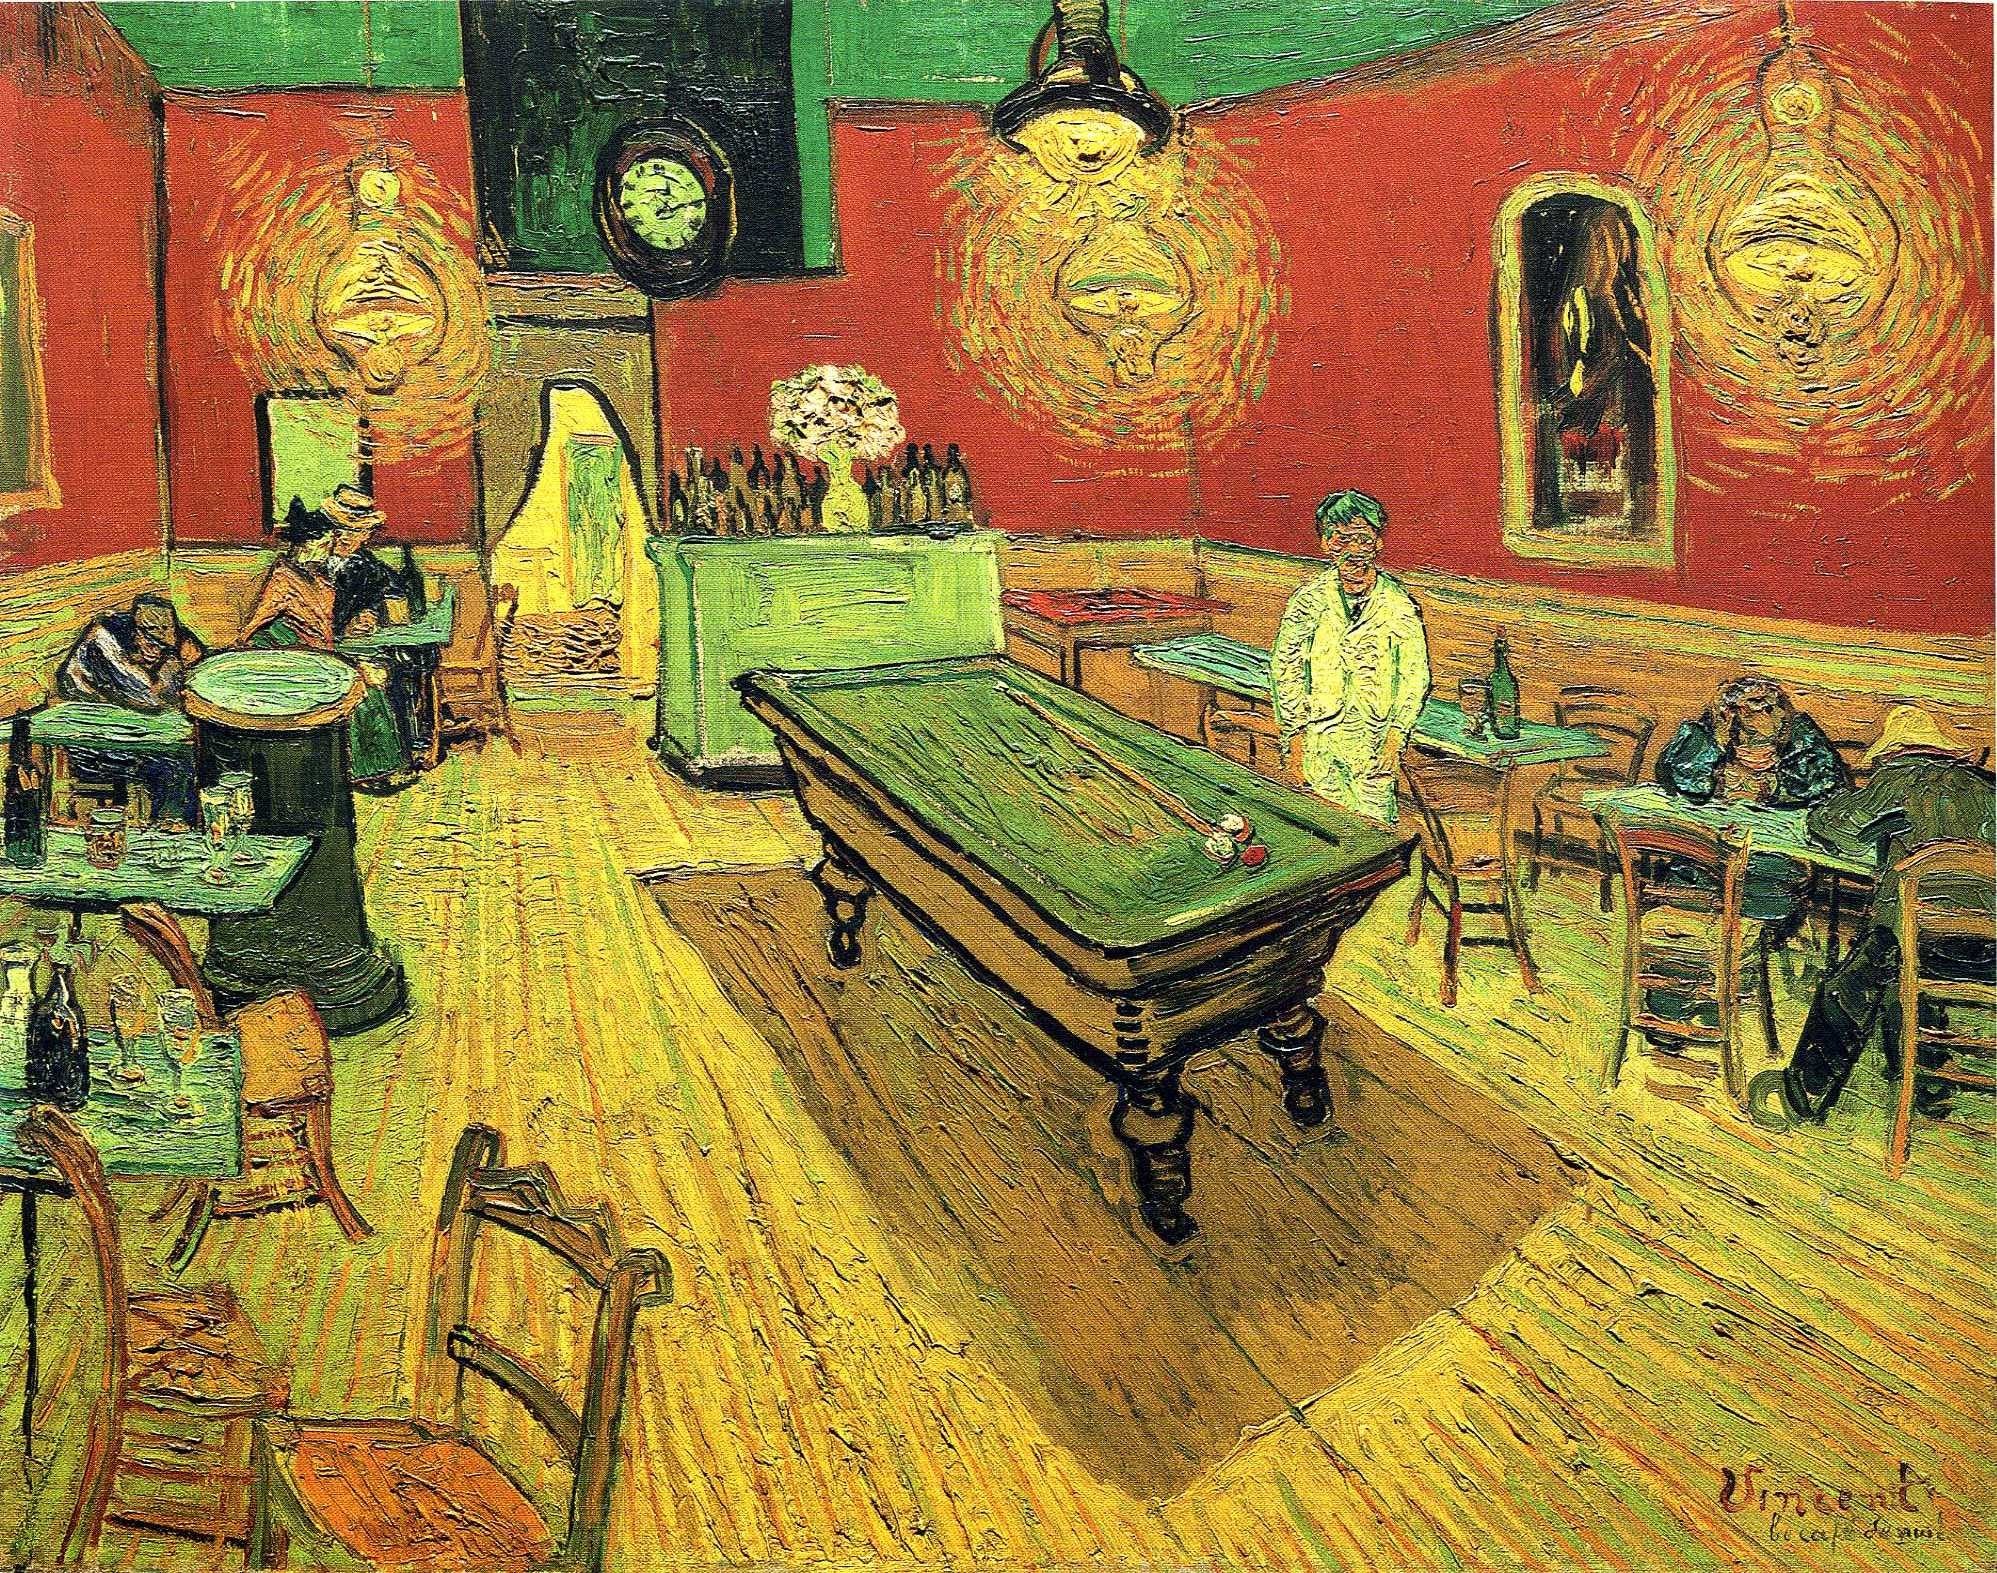 1997x1573 ... paintings, Vincent Van Gogh, artwork - related desktop wallpaper ...